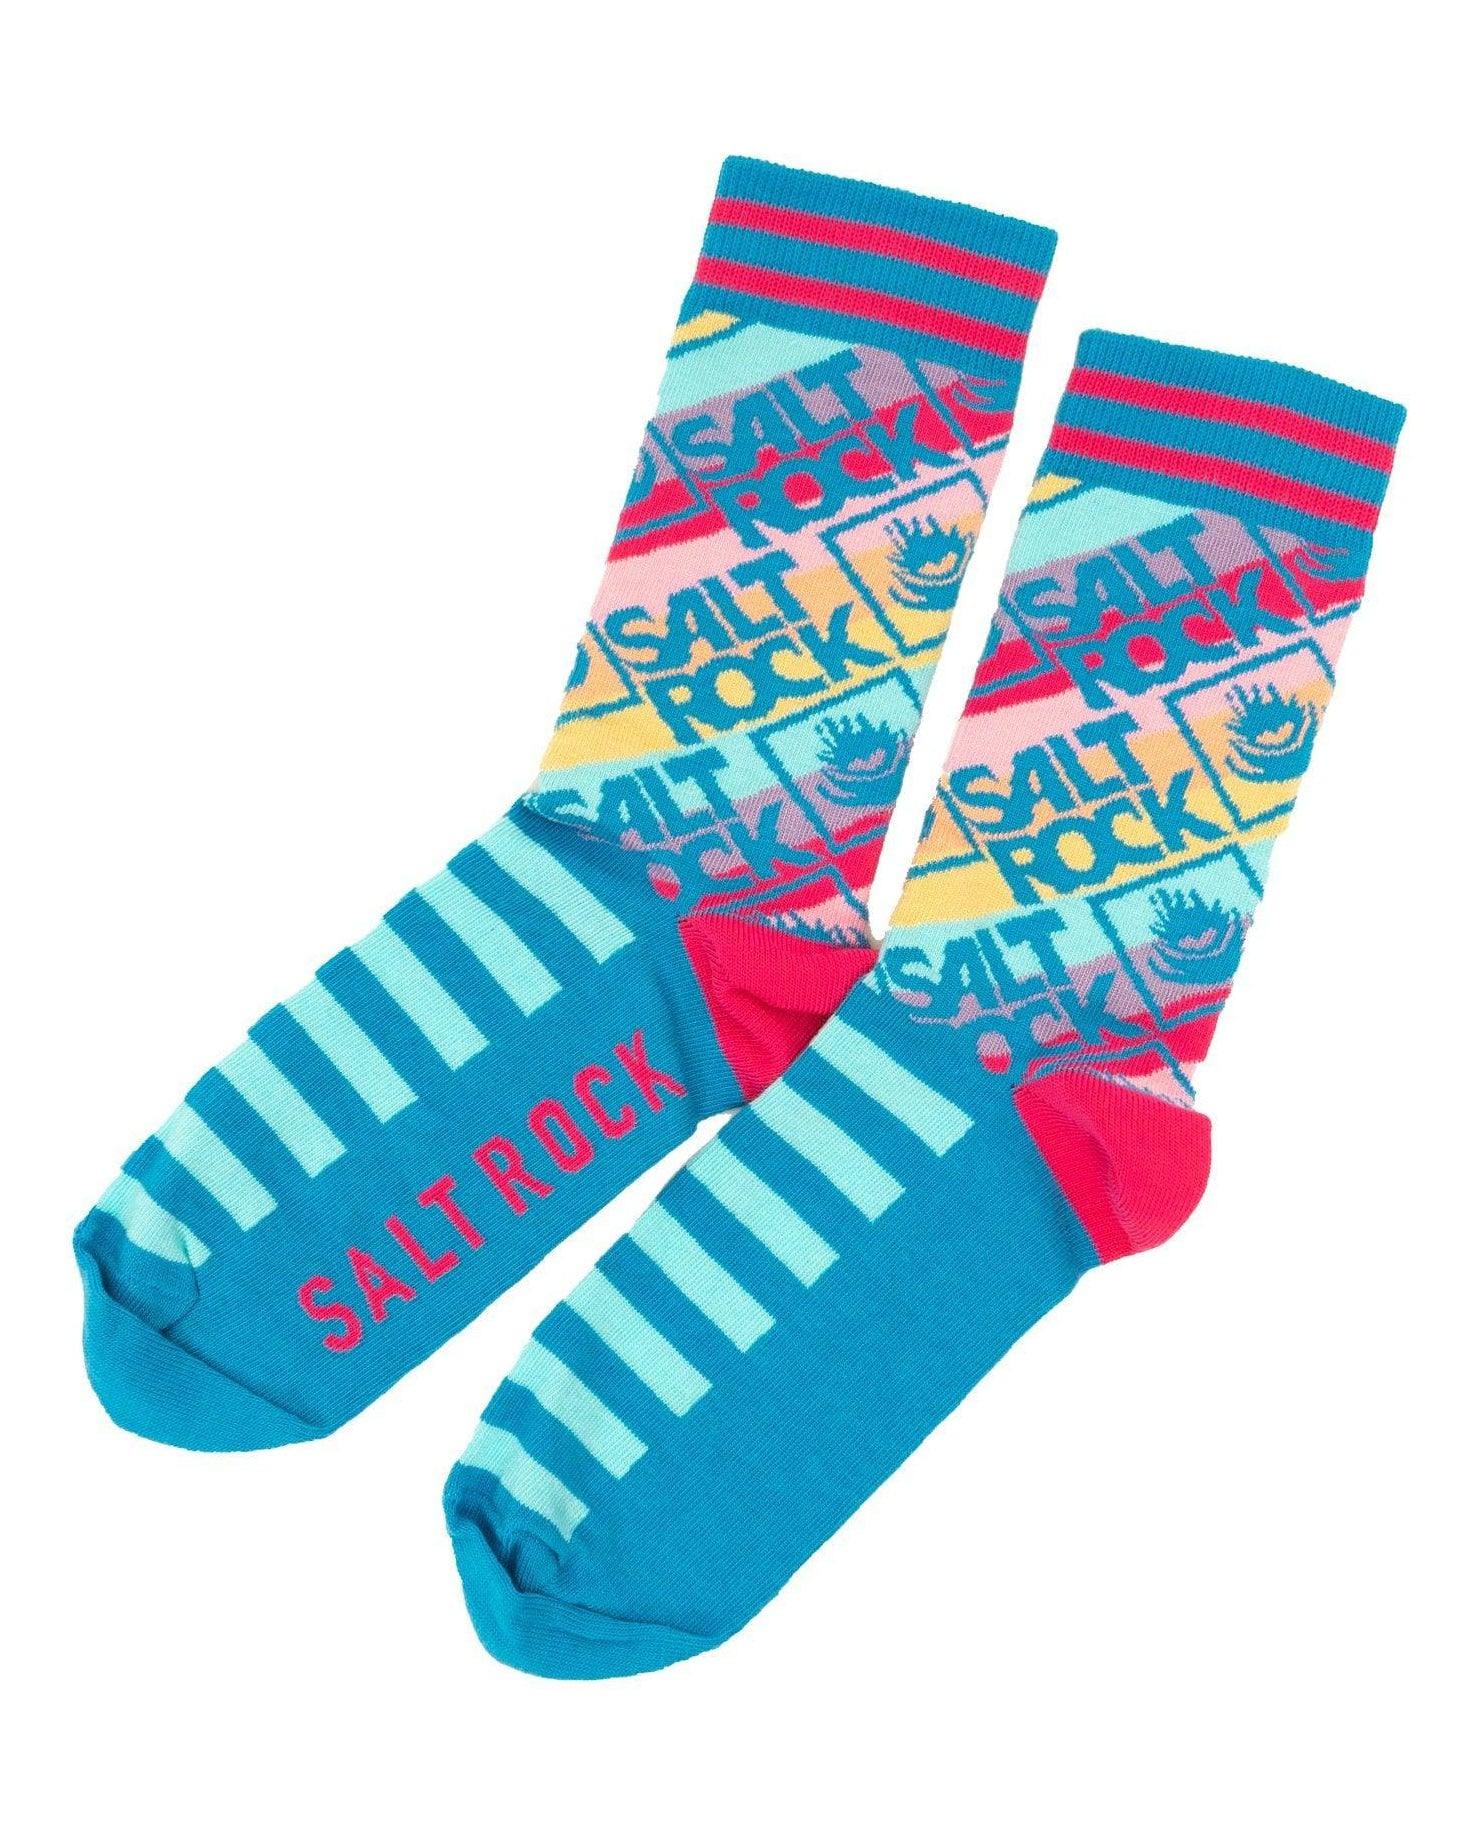 Rainbow Corp - Kids Socks - Blue